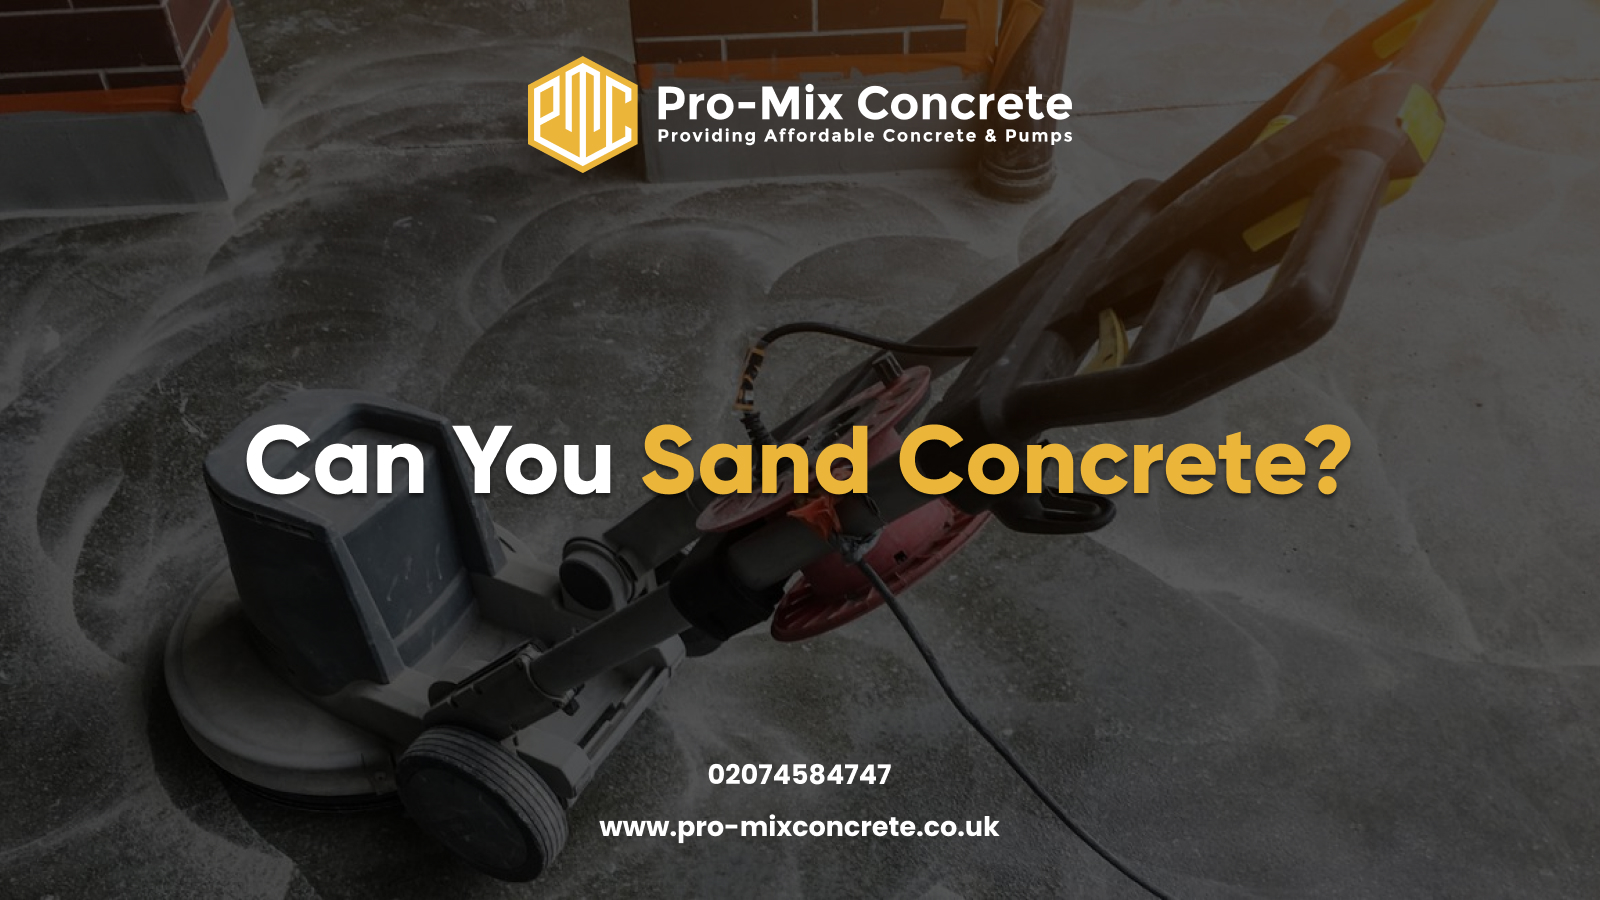 Can You Sand Concrete? Pro-Mix Concrete